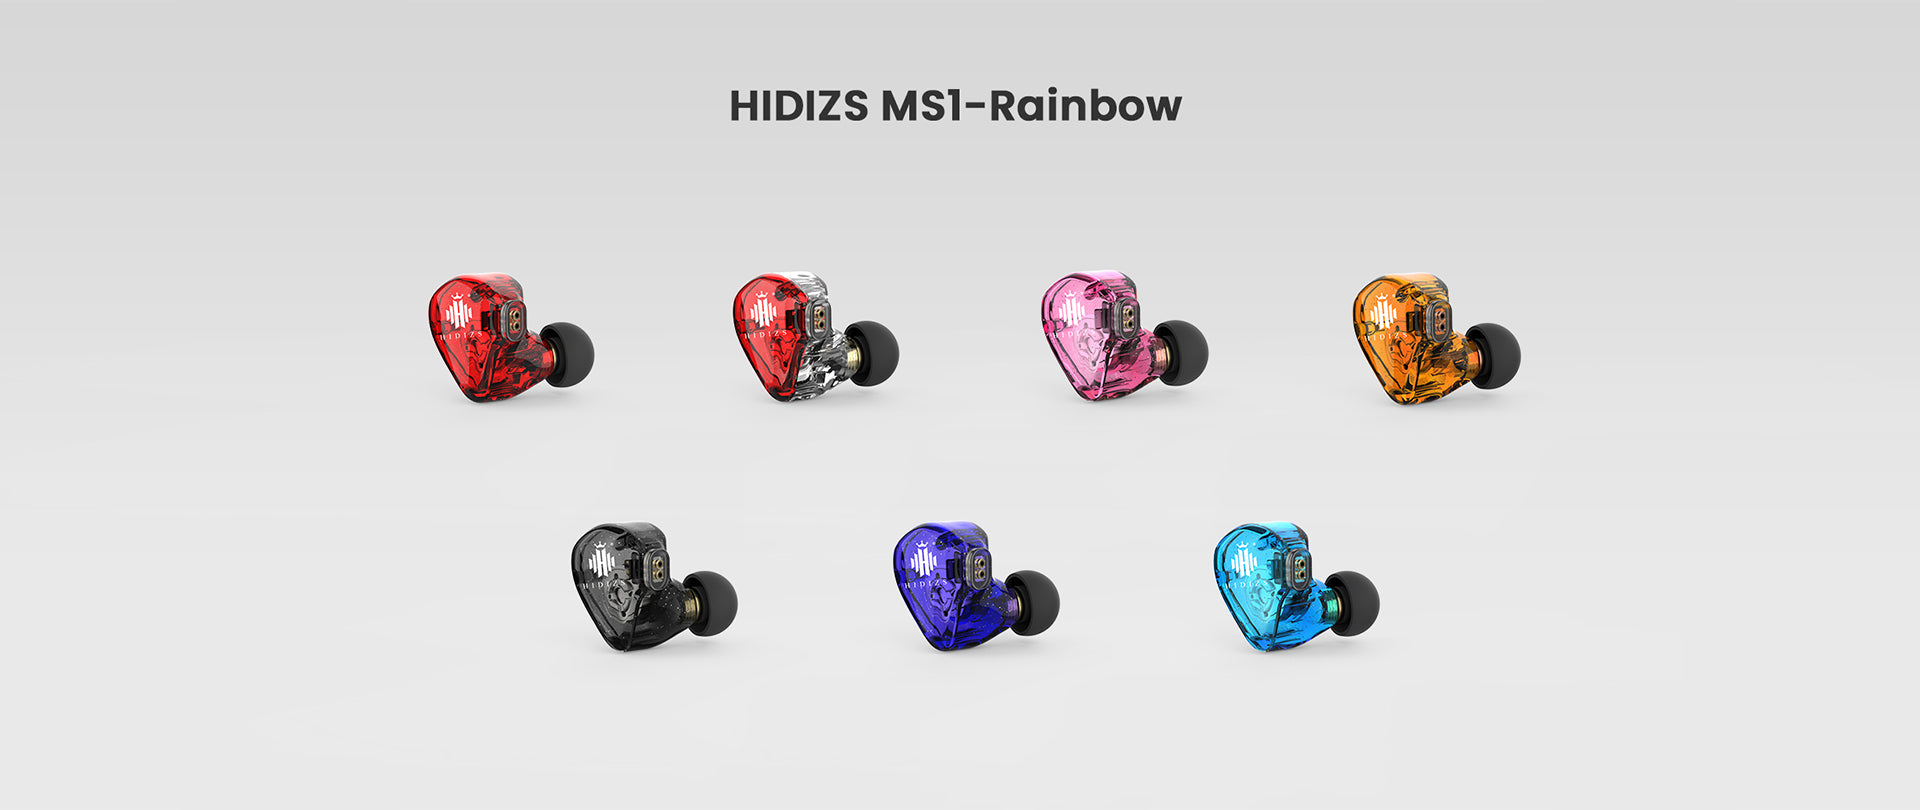 HIDIZS-MS1-RAINBOW-PC-23030815